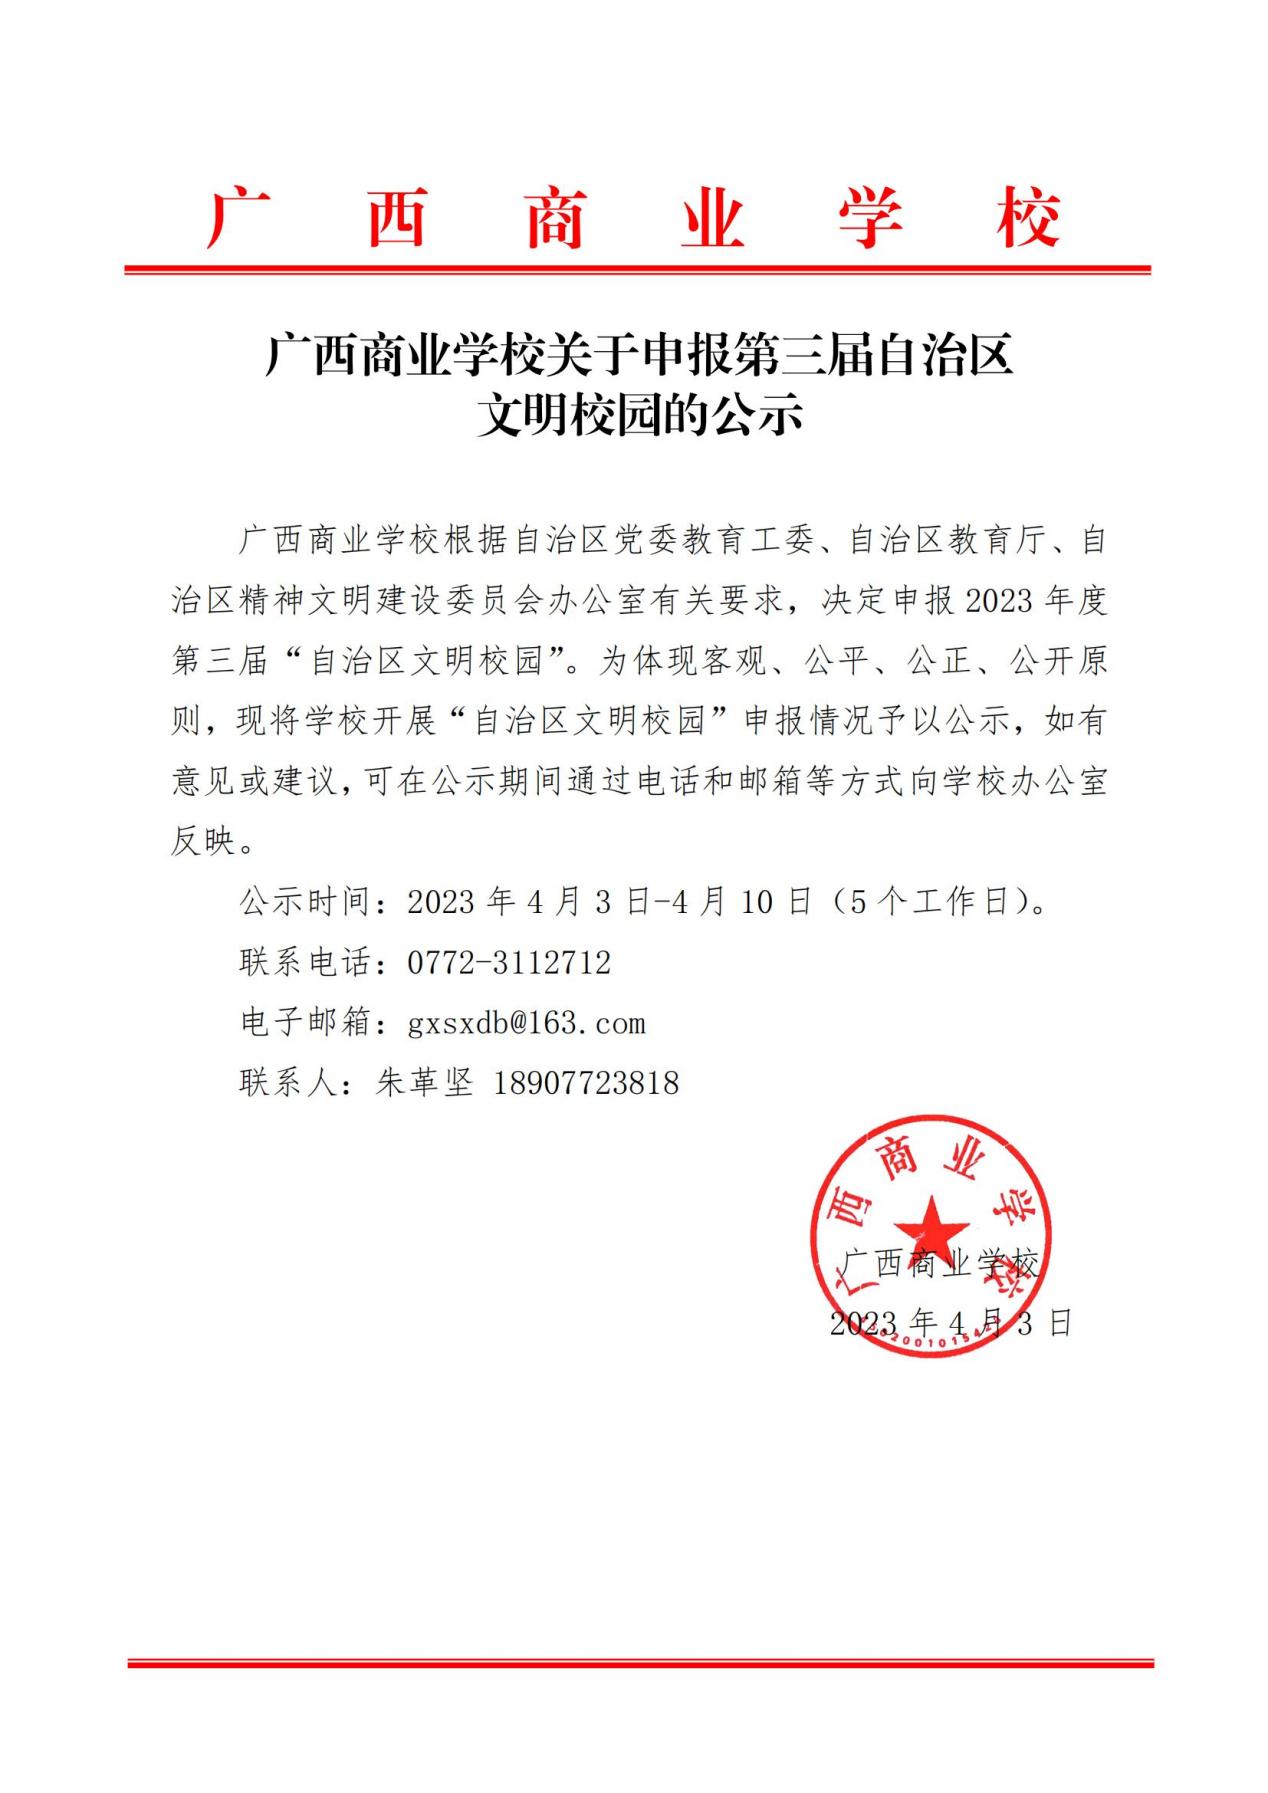 广西商业学校关于申报第三届自治区文明校园的公示